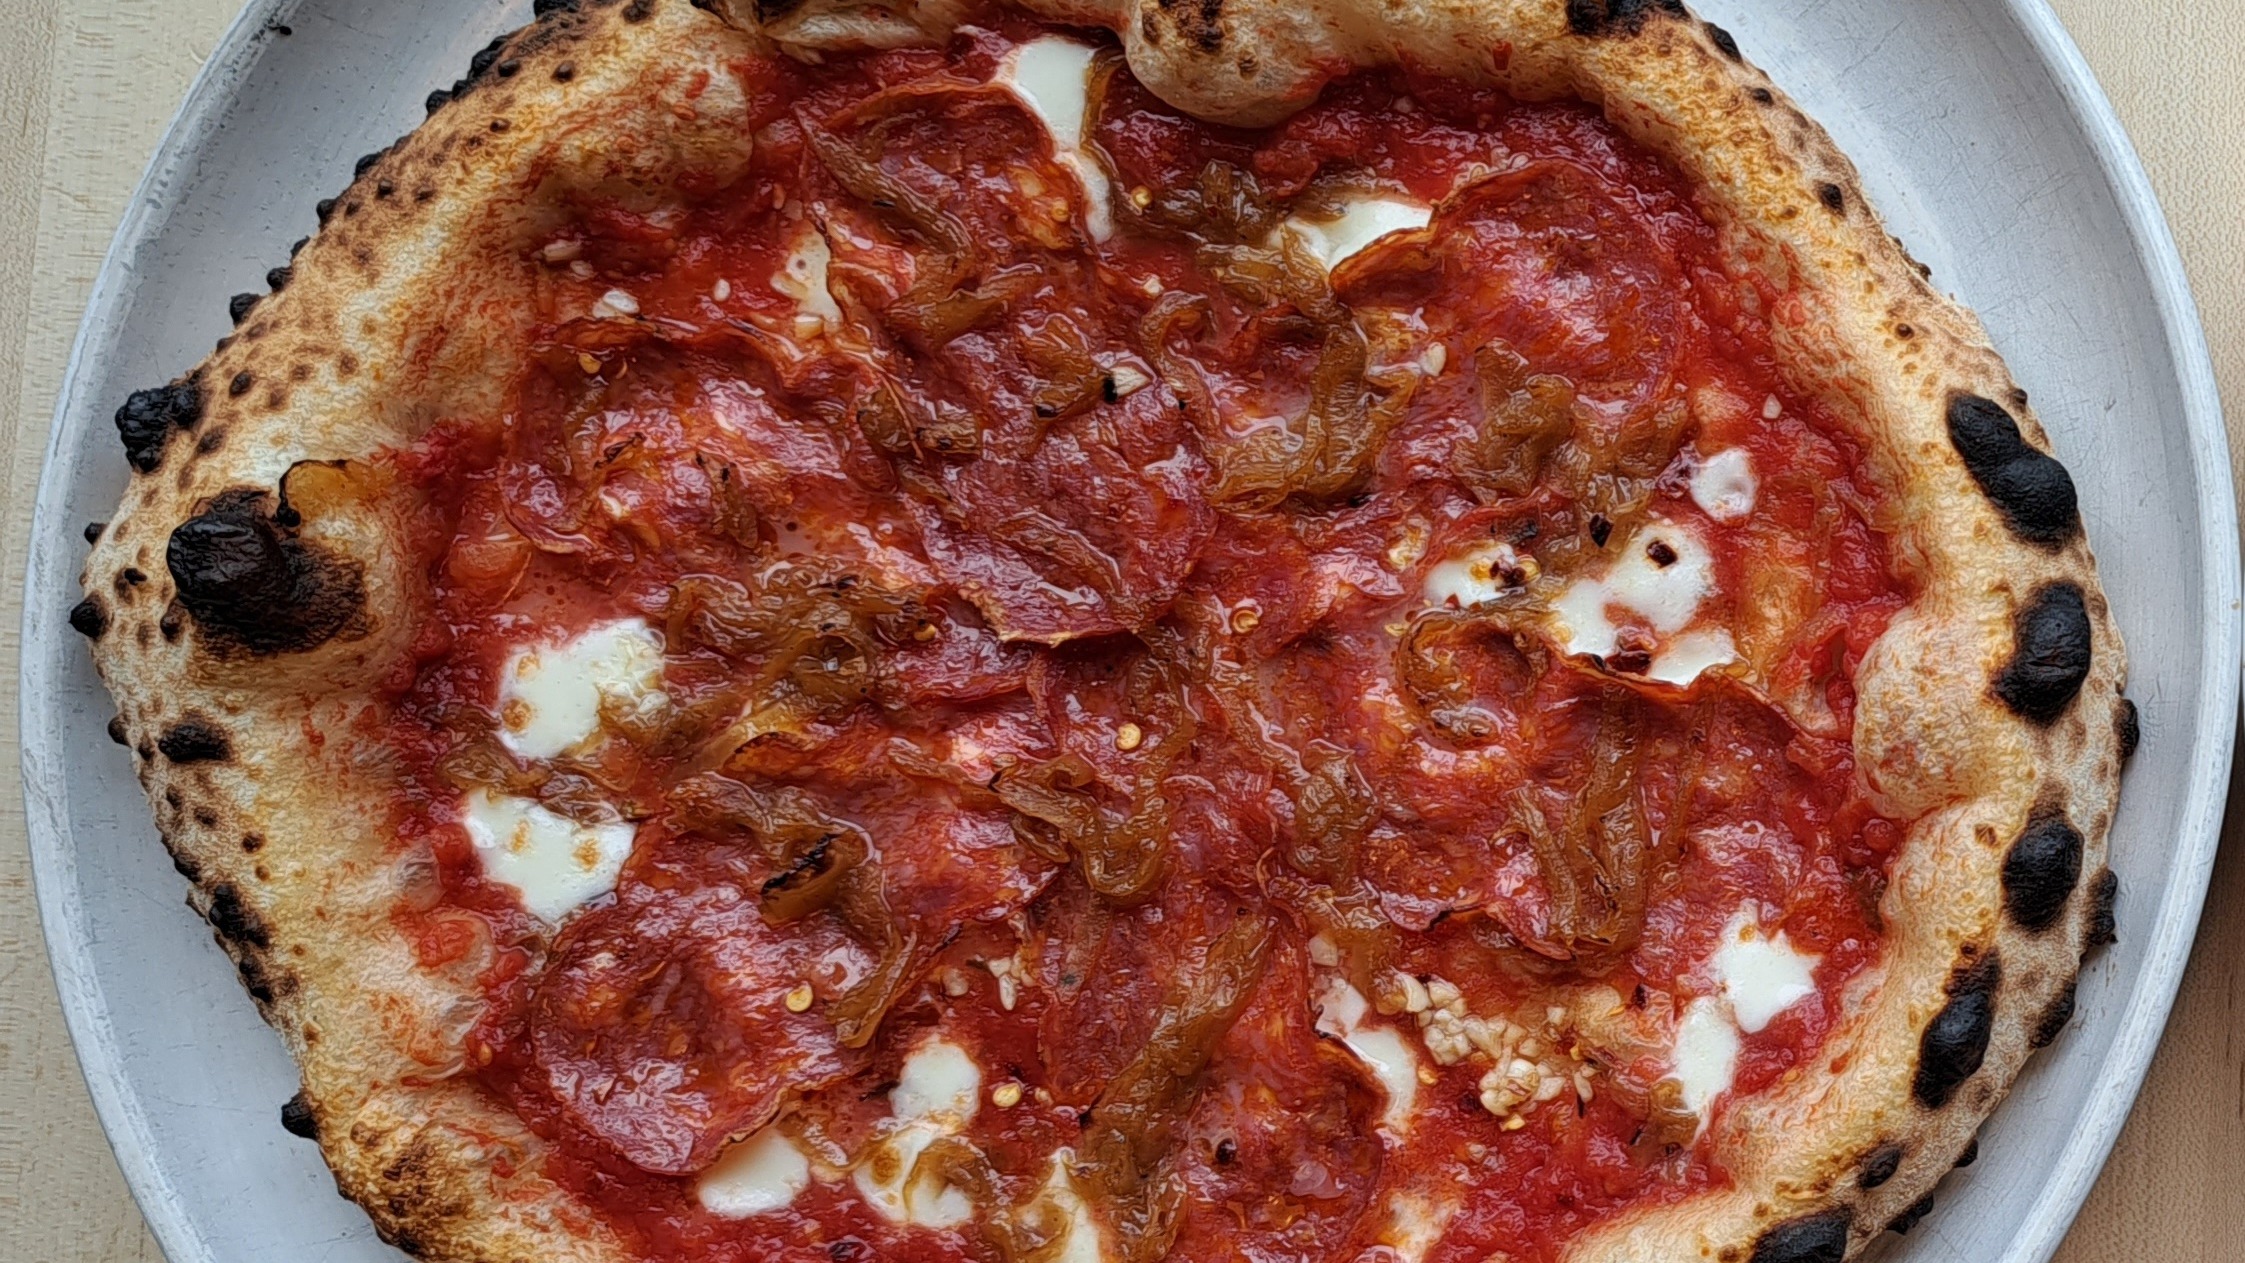 Piatto Pizzeria + Enoteca's Menu: Prices and Deliver - Doordash